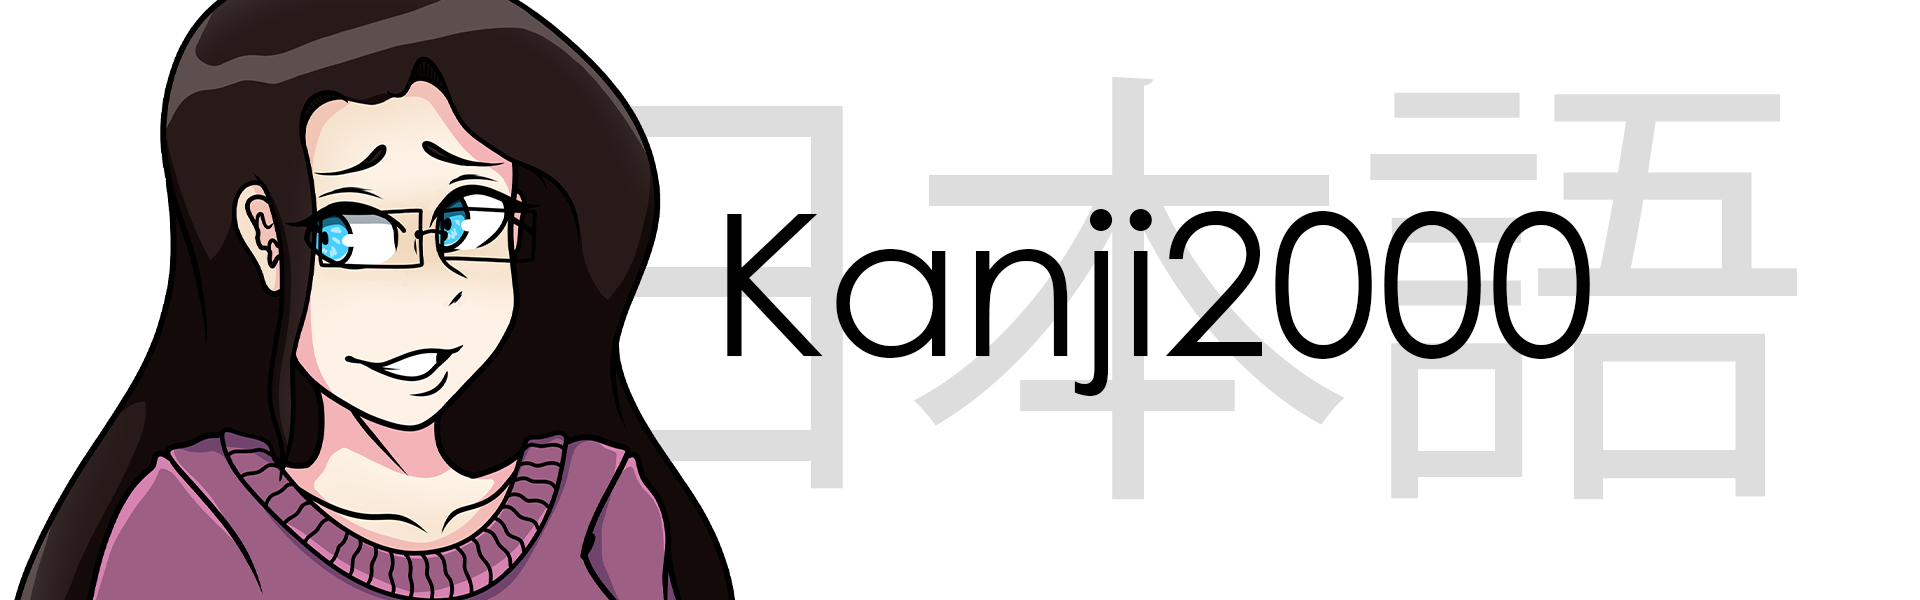 kanji2000_1920x600